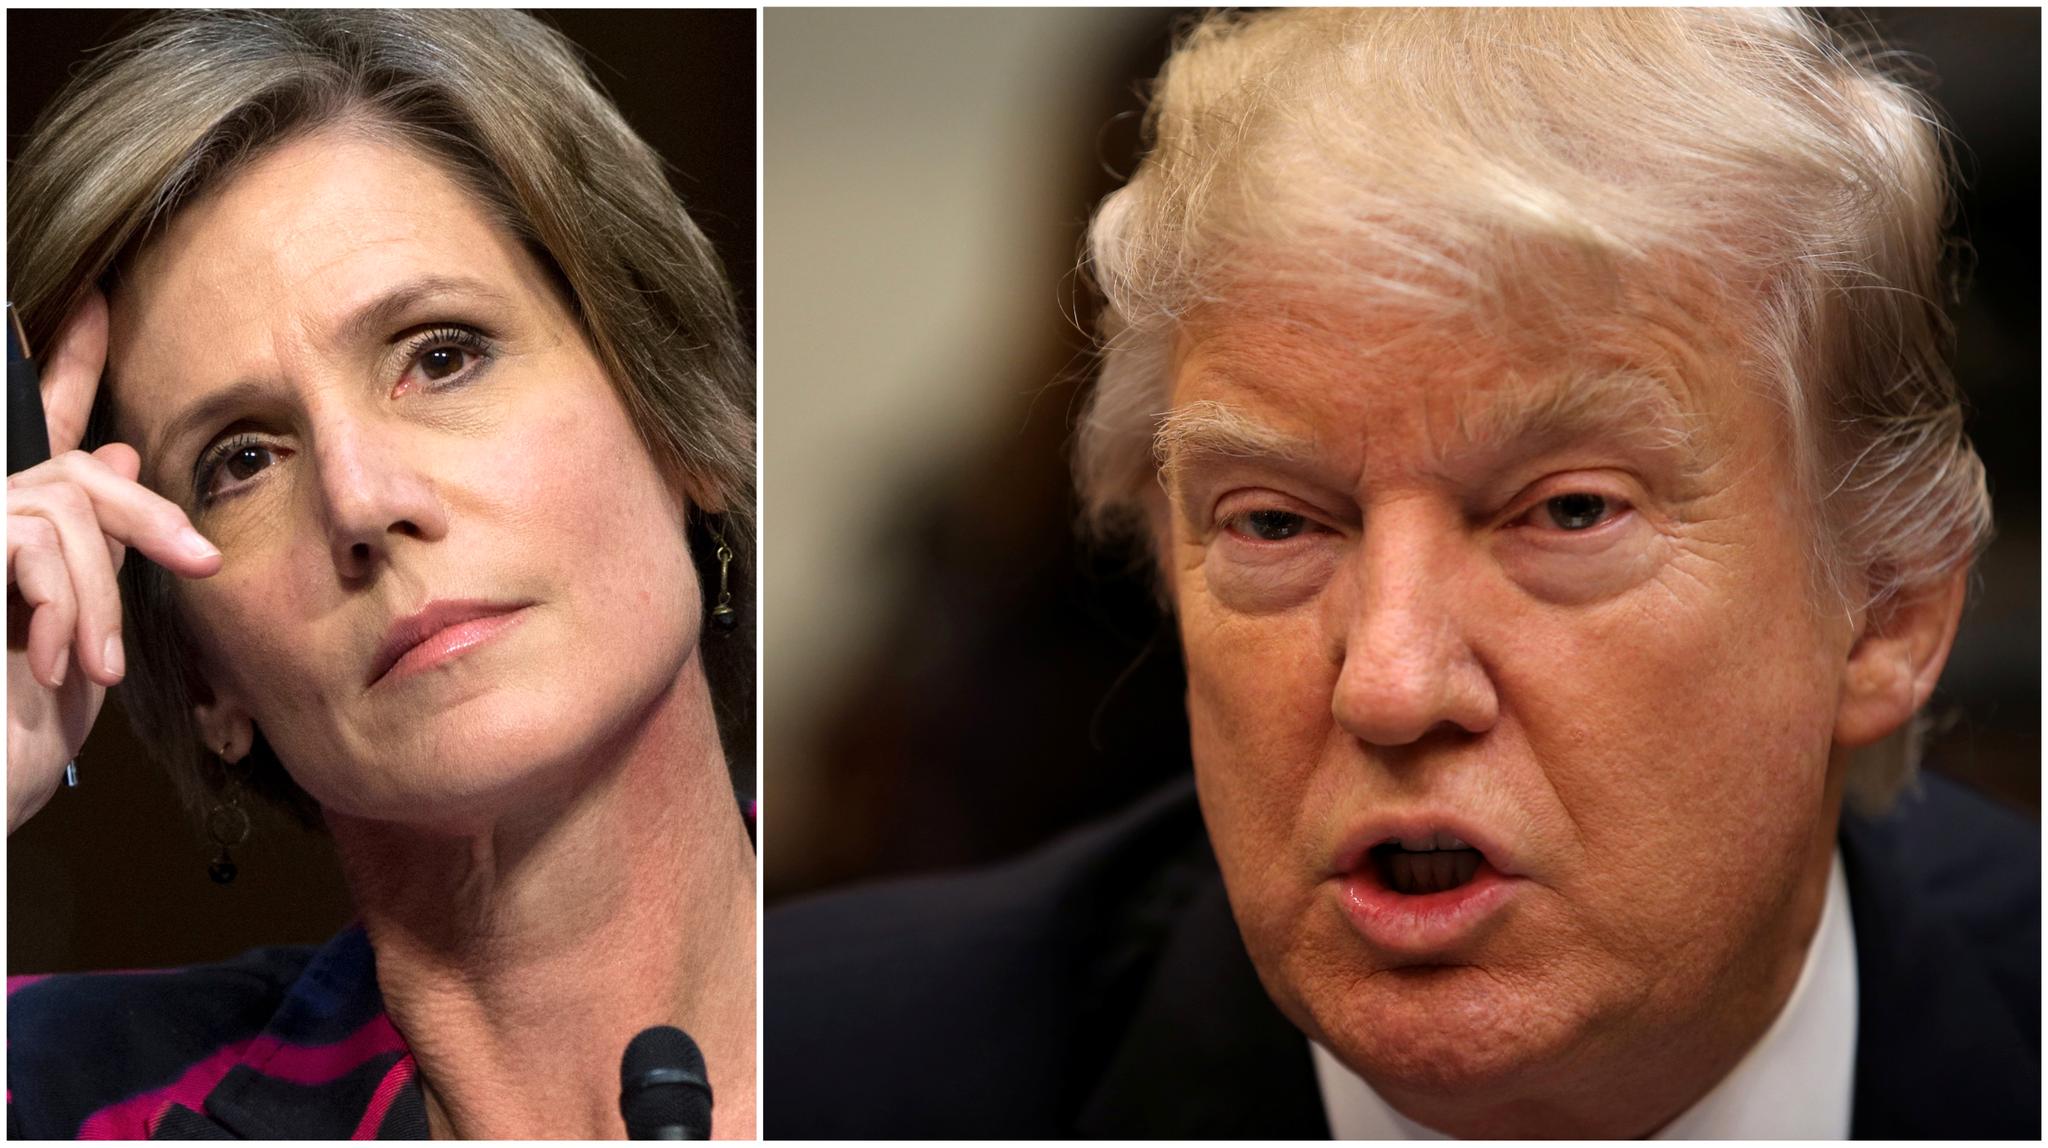 President Donald Trump har kvittet seg med den fungerende justisministeren, Sally Yates, fordi hun nektet å gjøre som han sa.